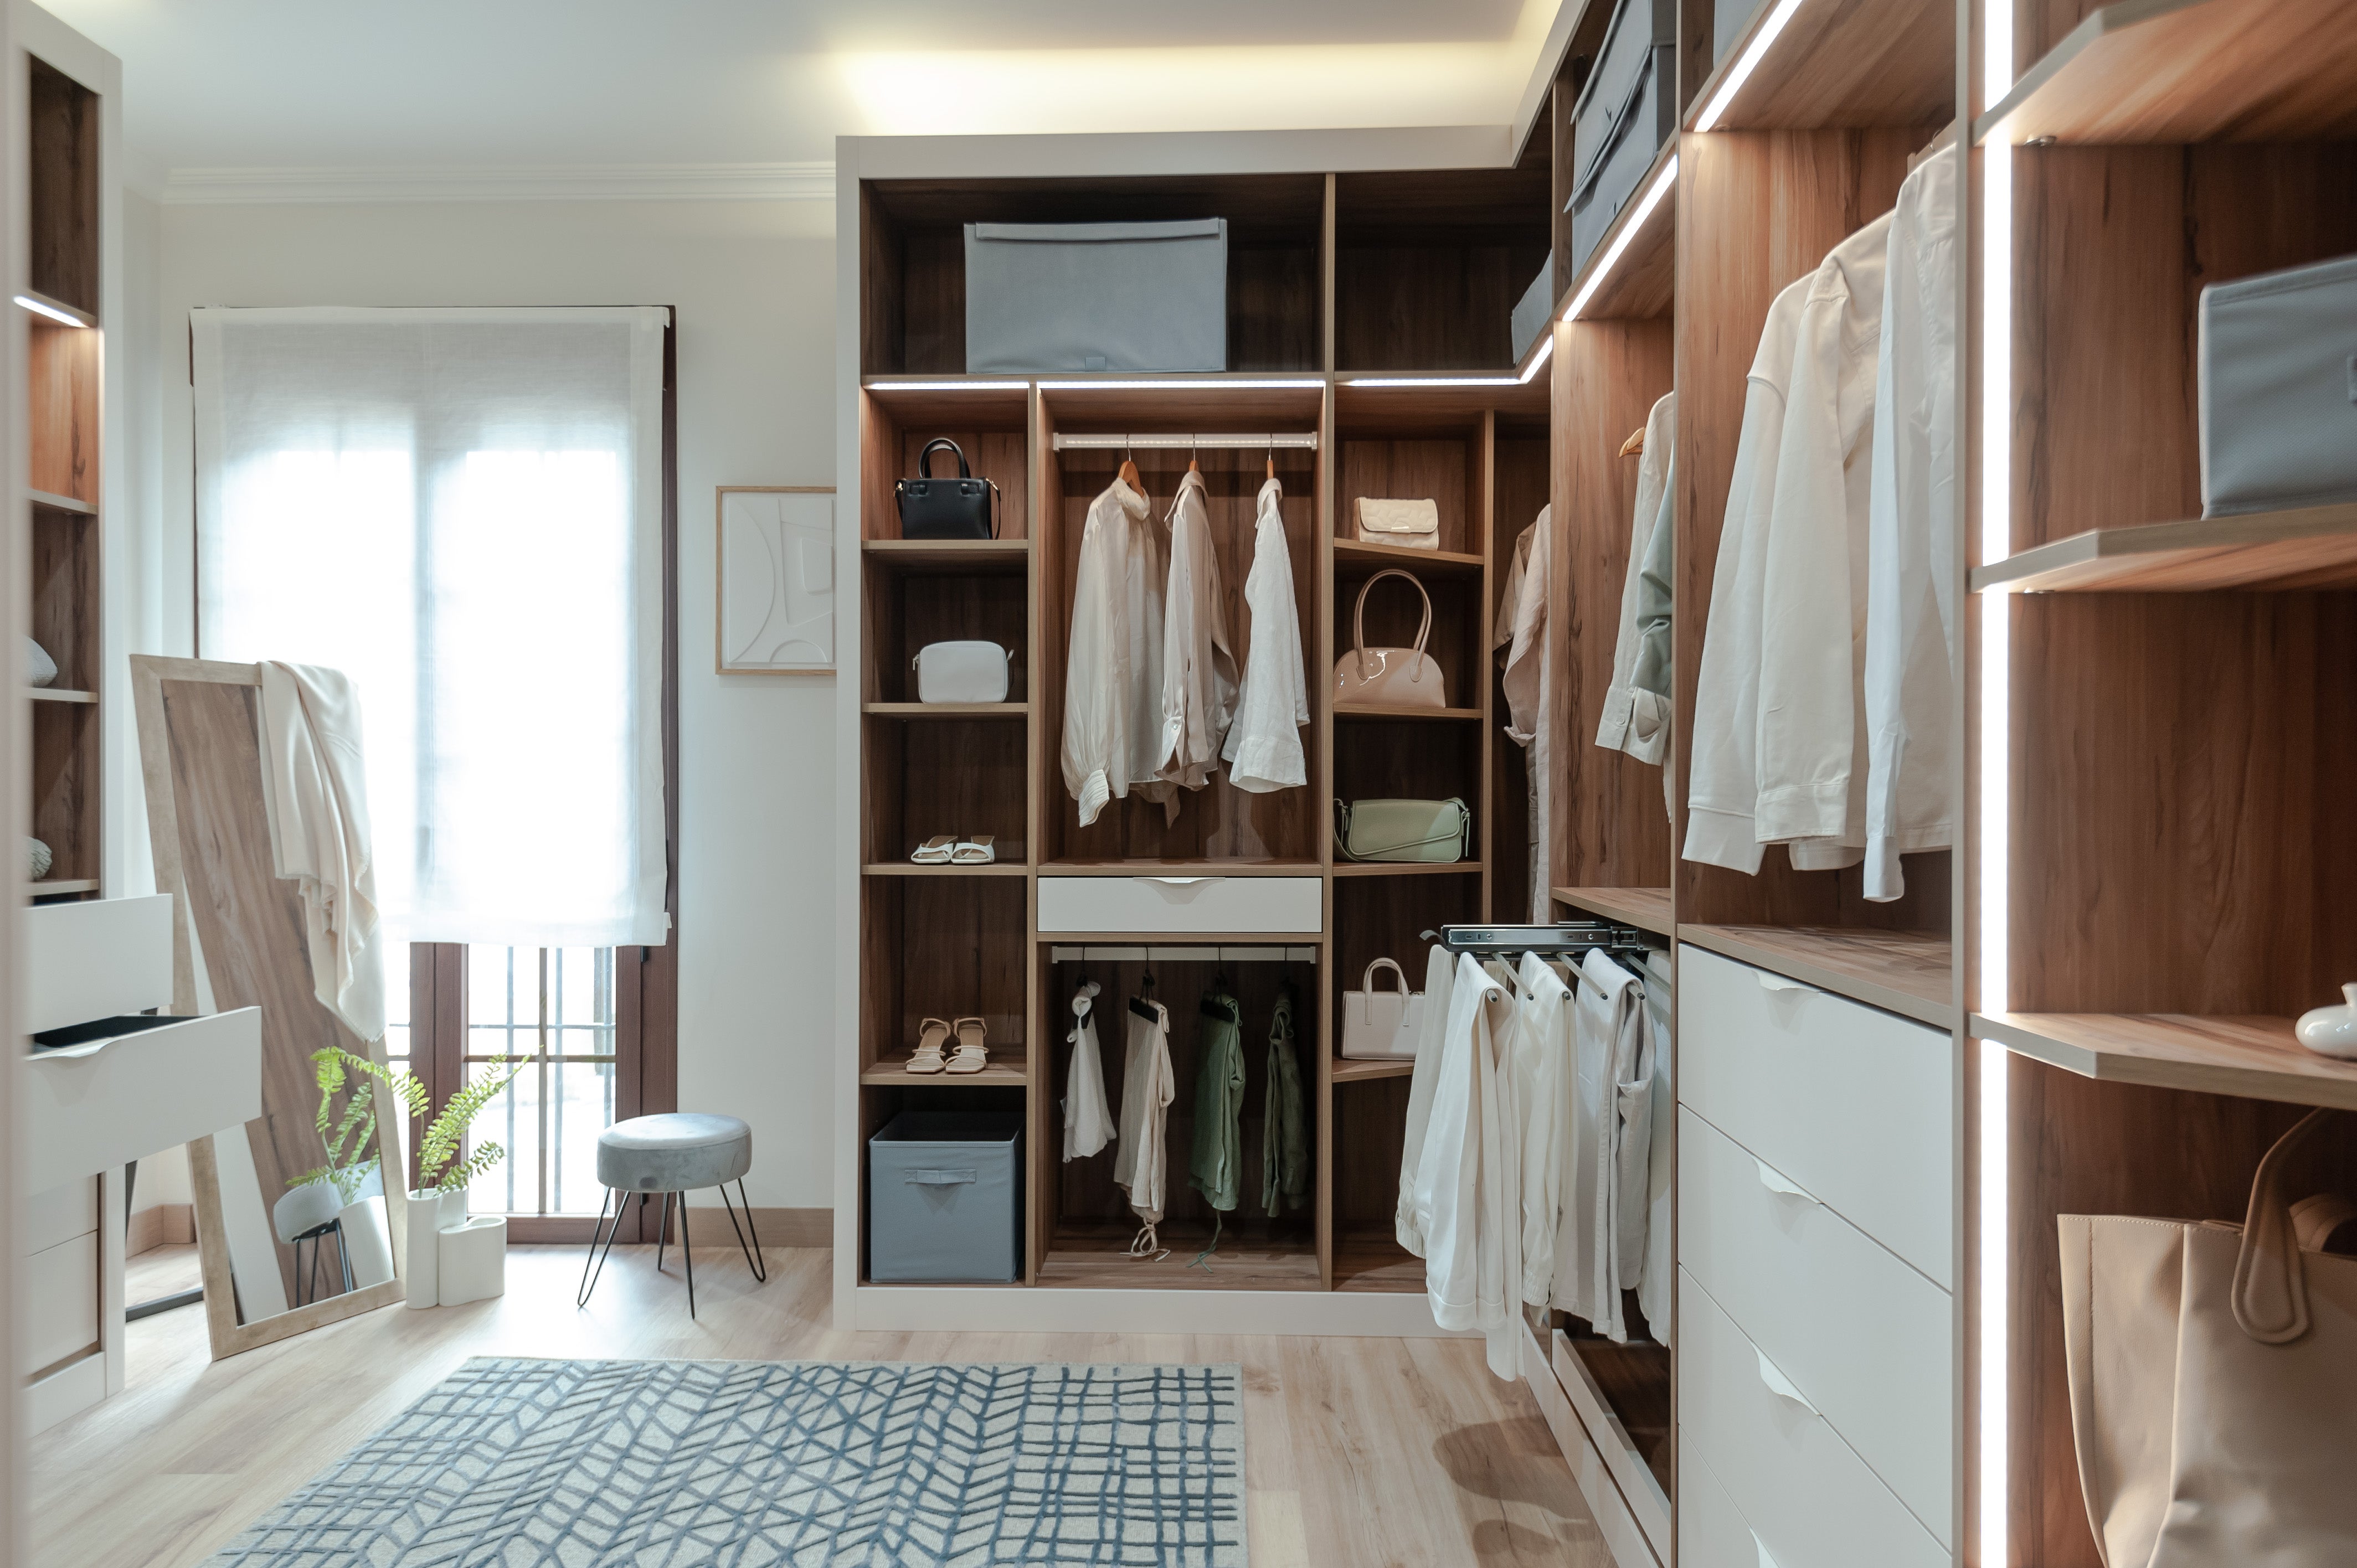 Armarios a medida: dos proyectos que transforman una habitación en vestidor ideal | Leroy Merlin